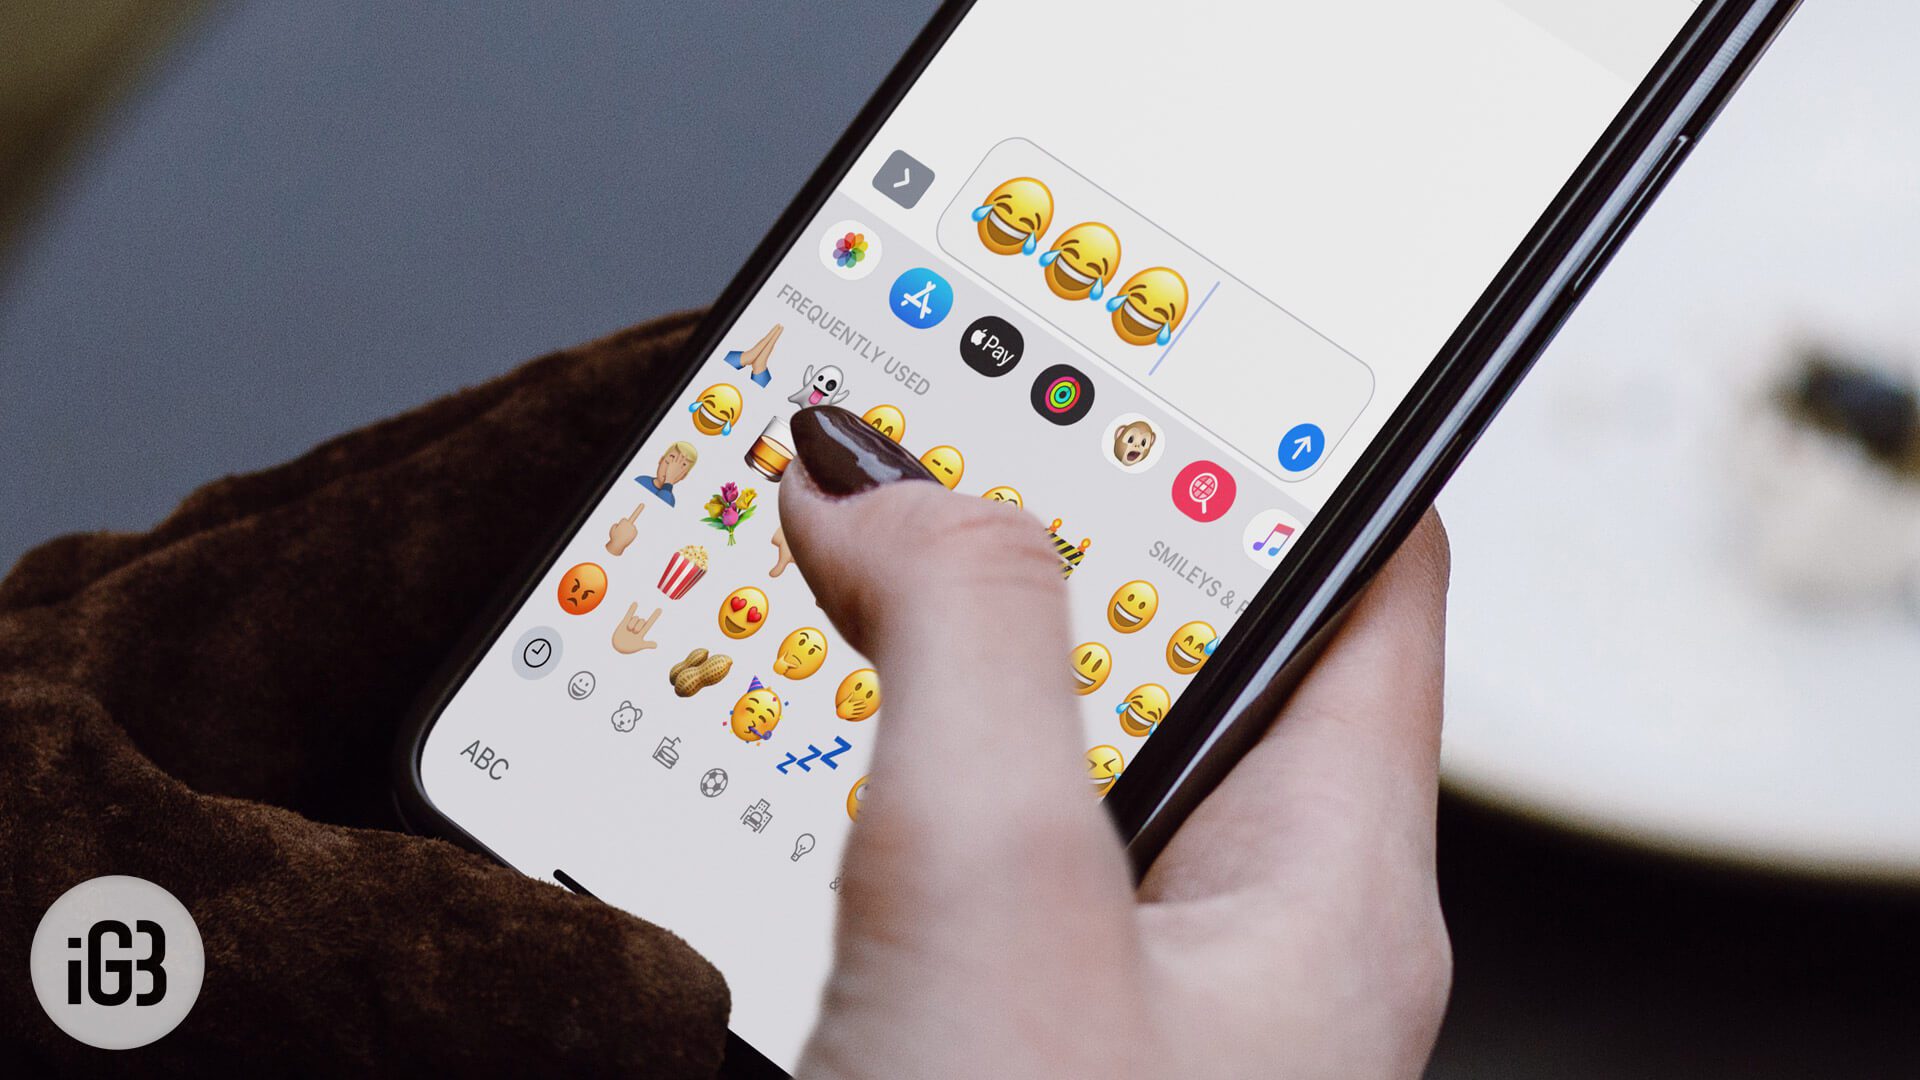 How to Add Emoji Keyboard to iPhone or iPad